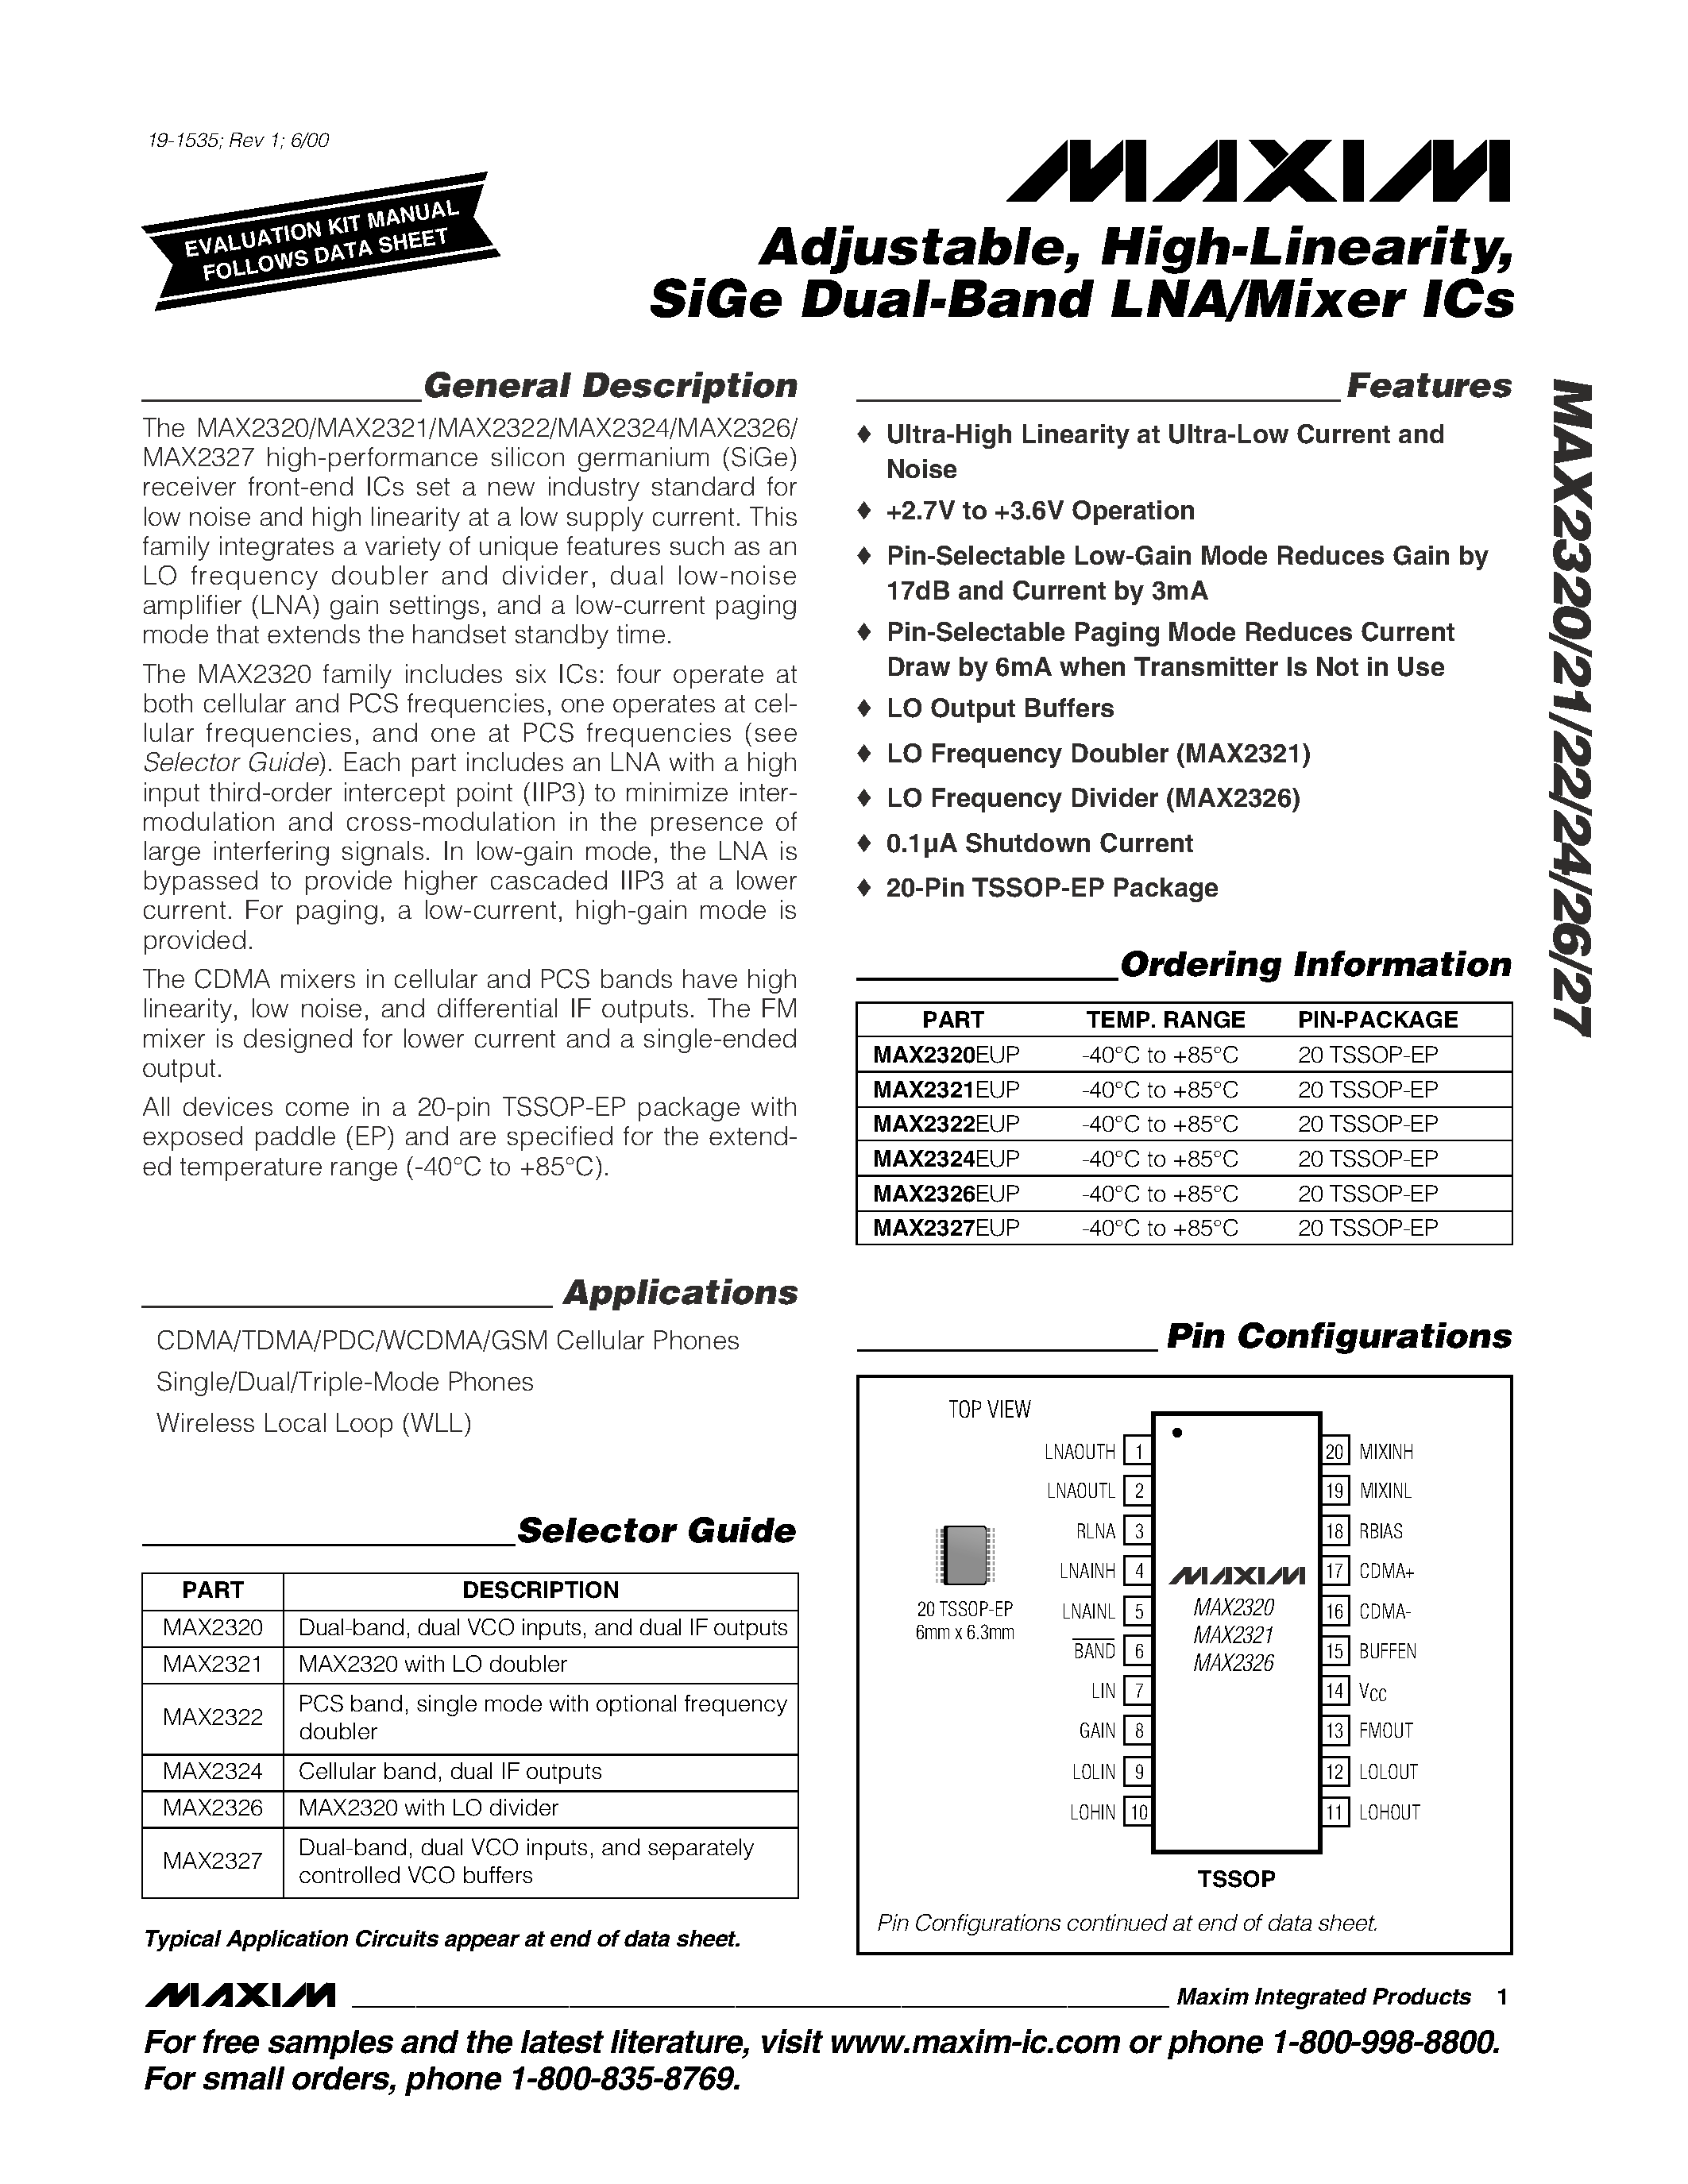 Даташит MAX2324 - Adjustable / High-Linearity / SiGe Dual-Band LNA/Mixer ICs страница 1